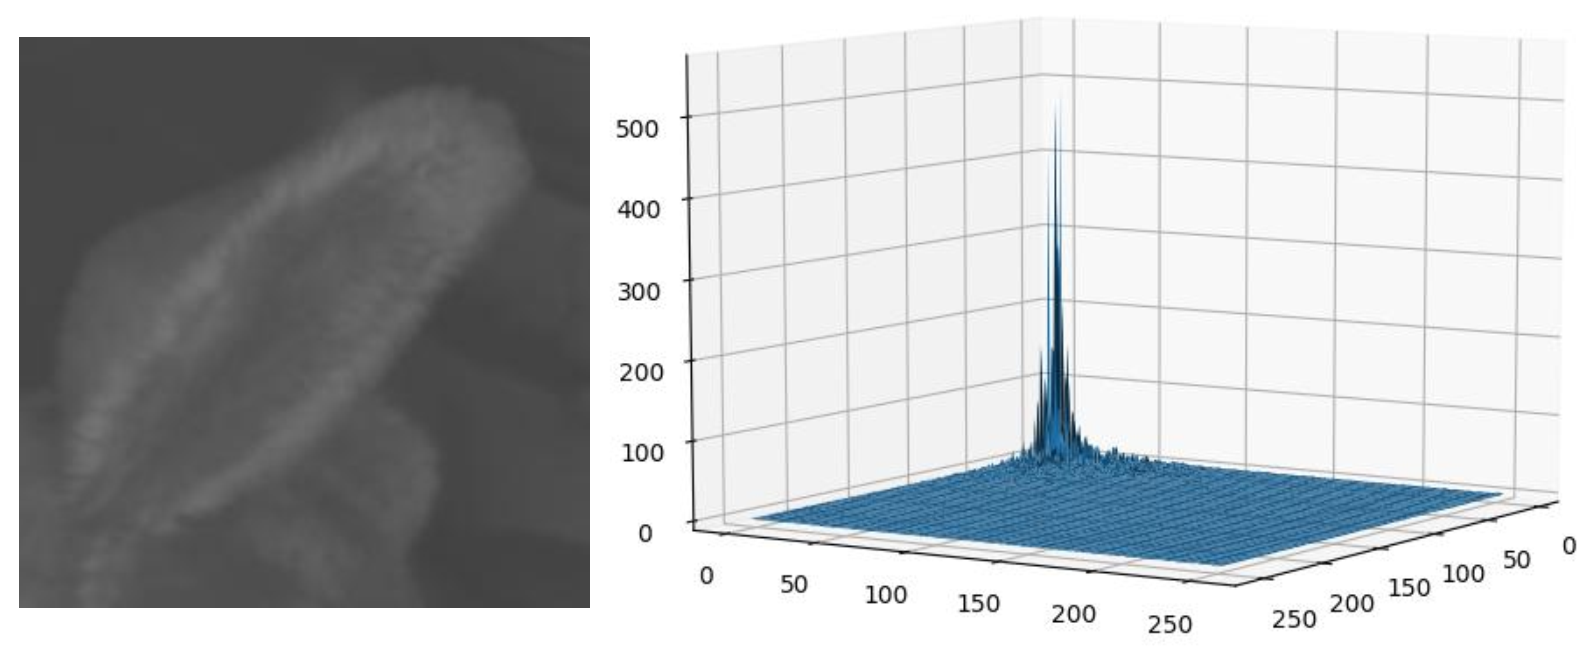 传统图像降噪算法之BM3D原理详解